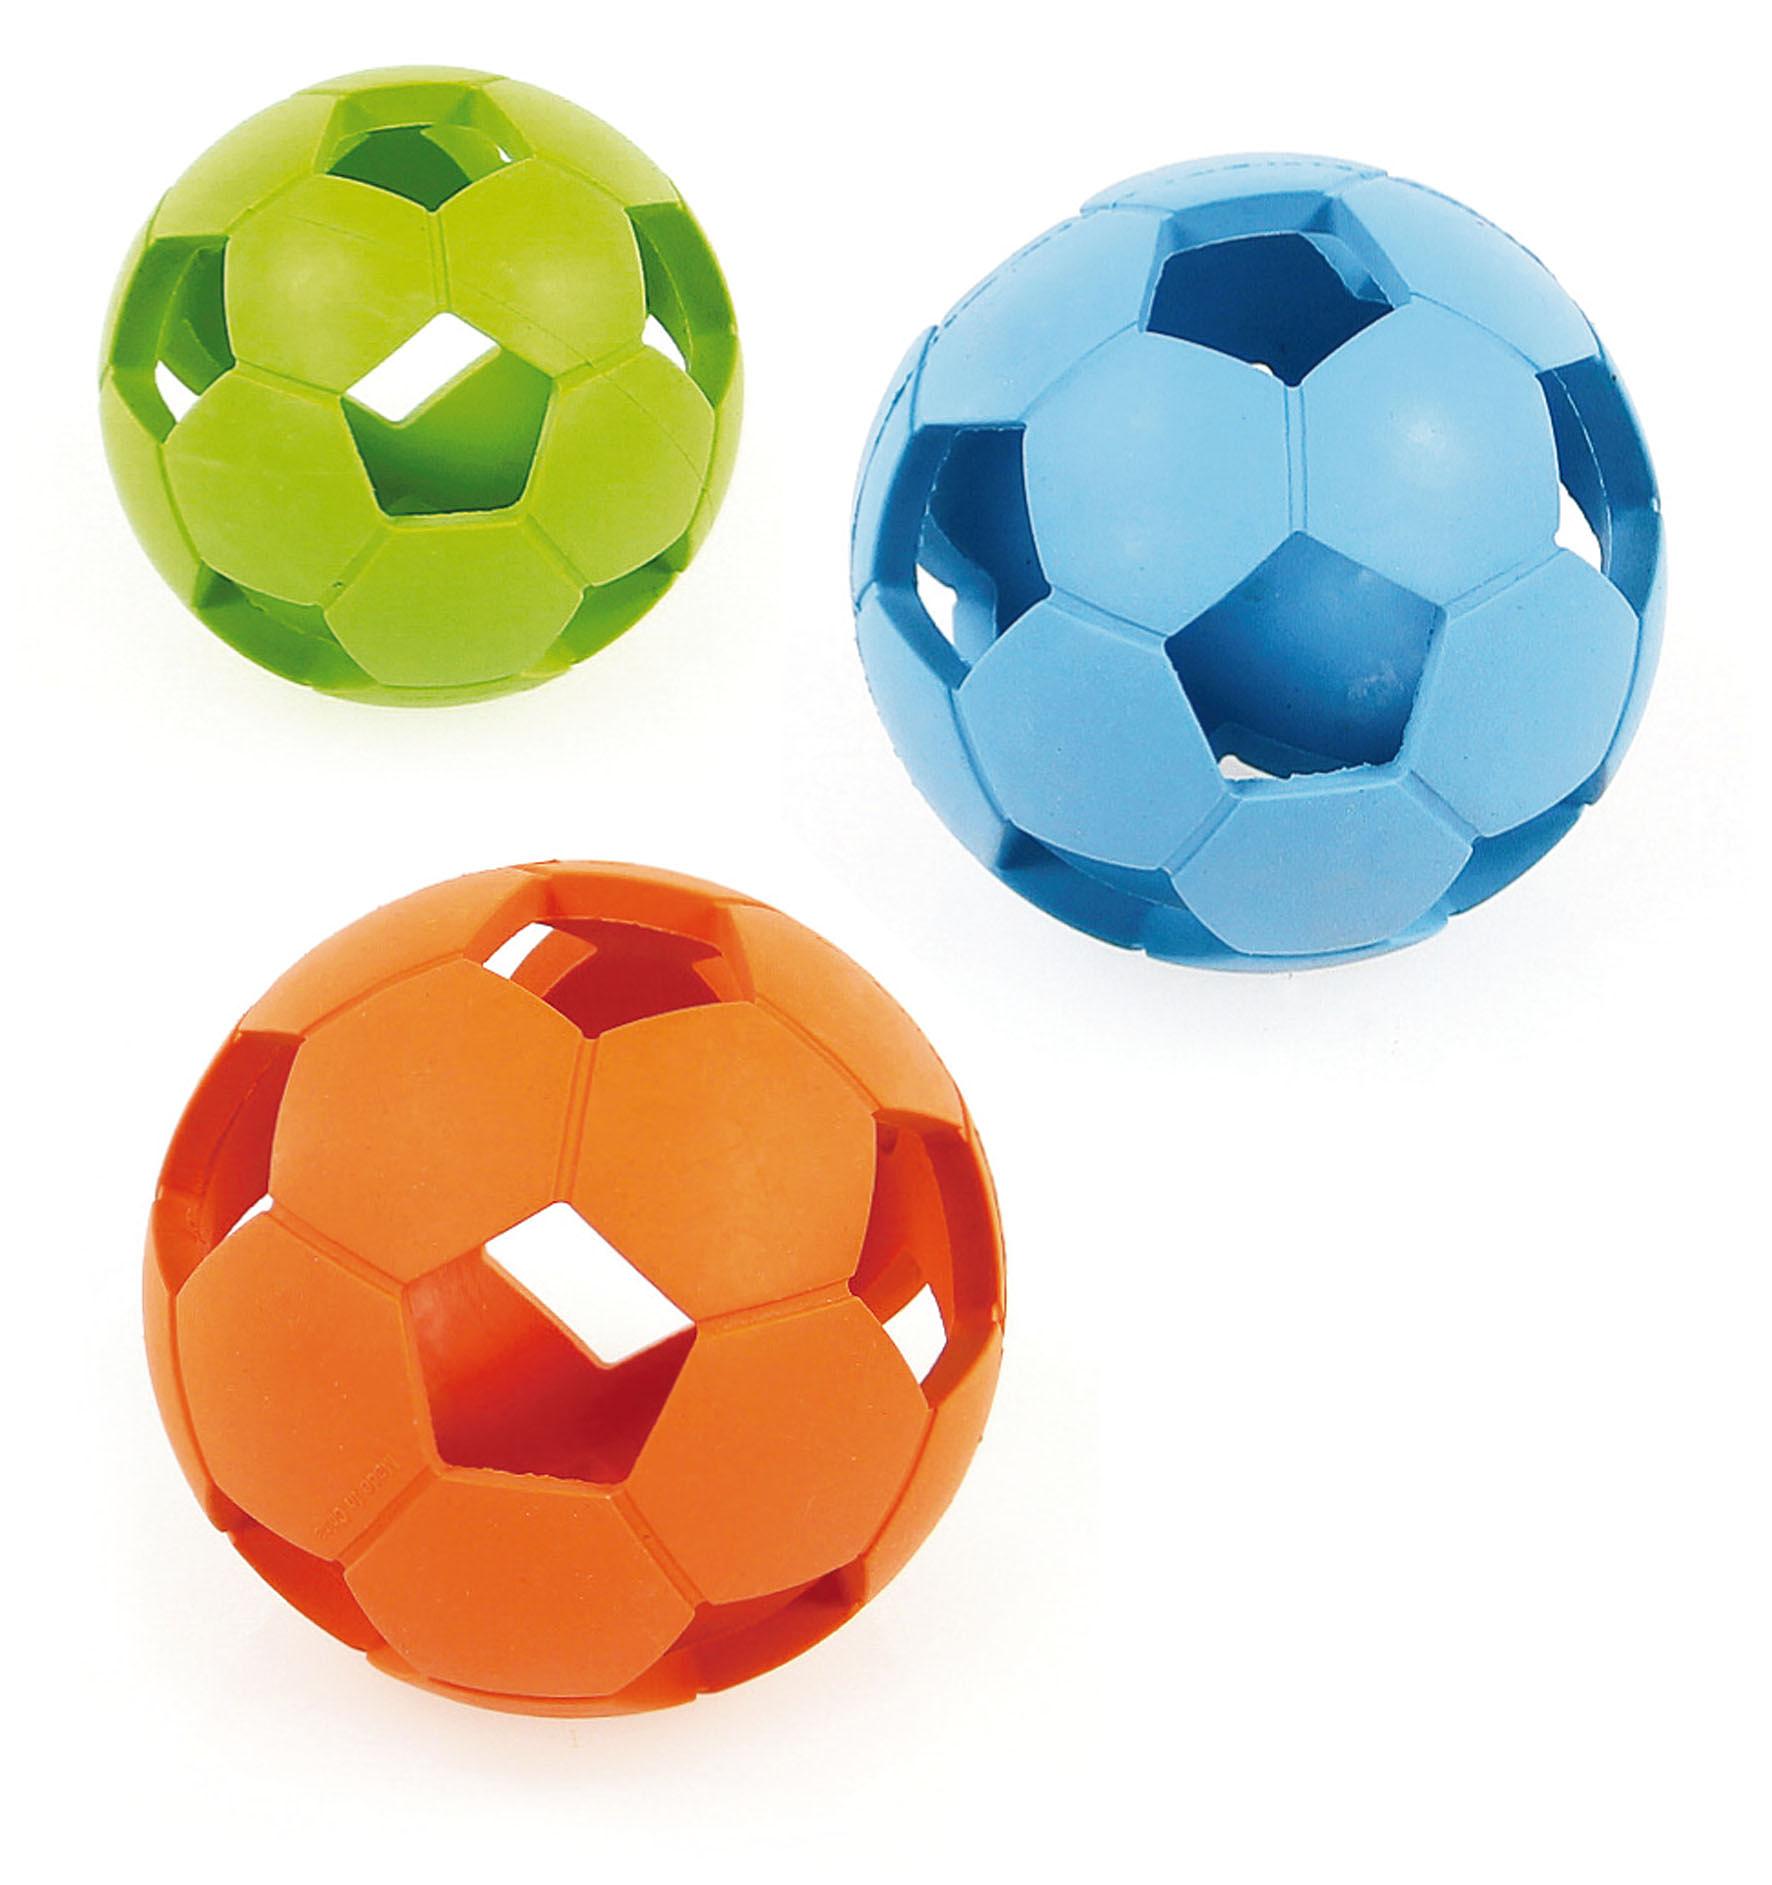 swisspet Hundespielzeug Weichgummi-Fussball